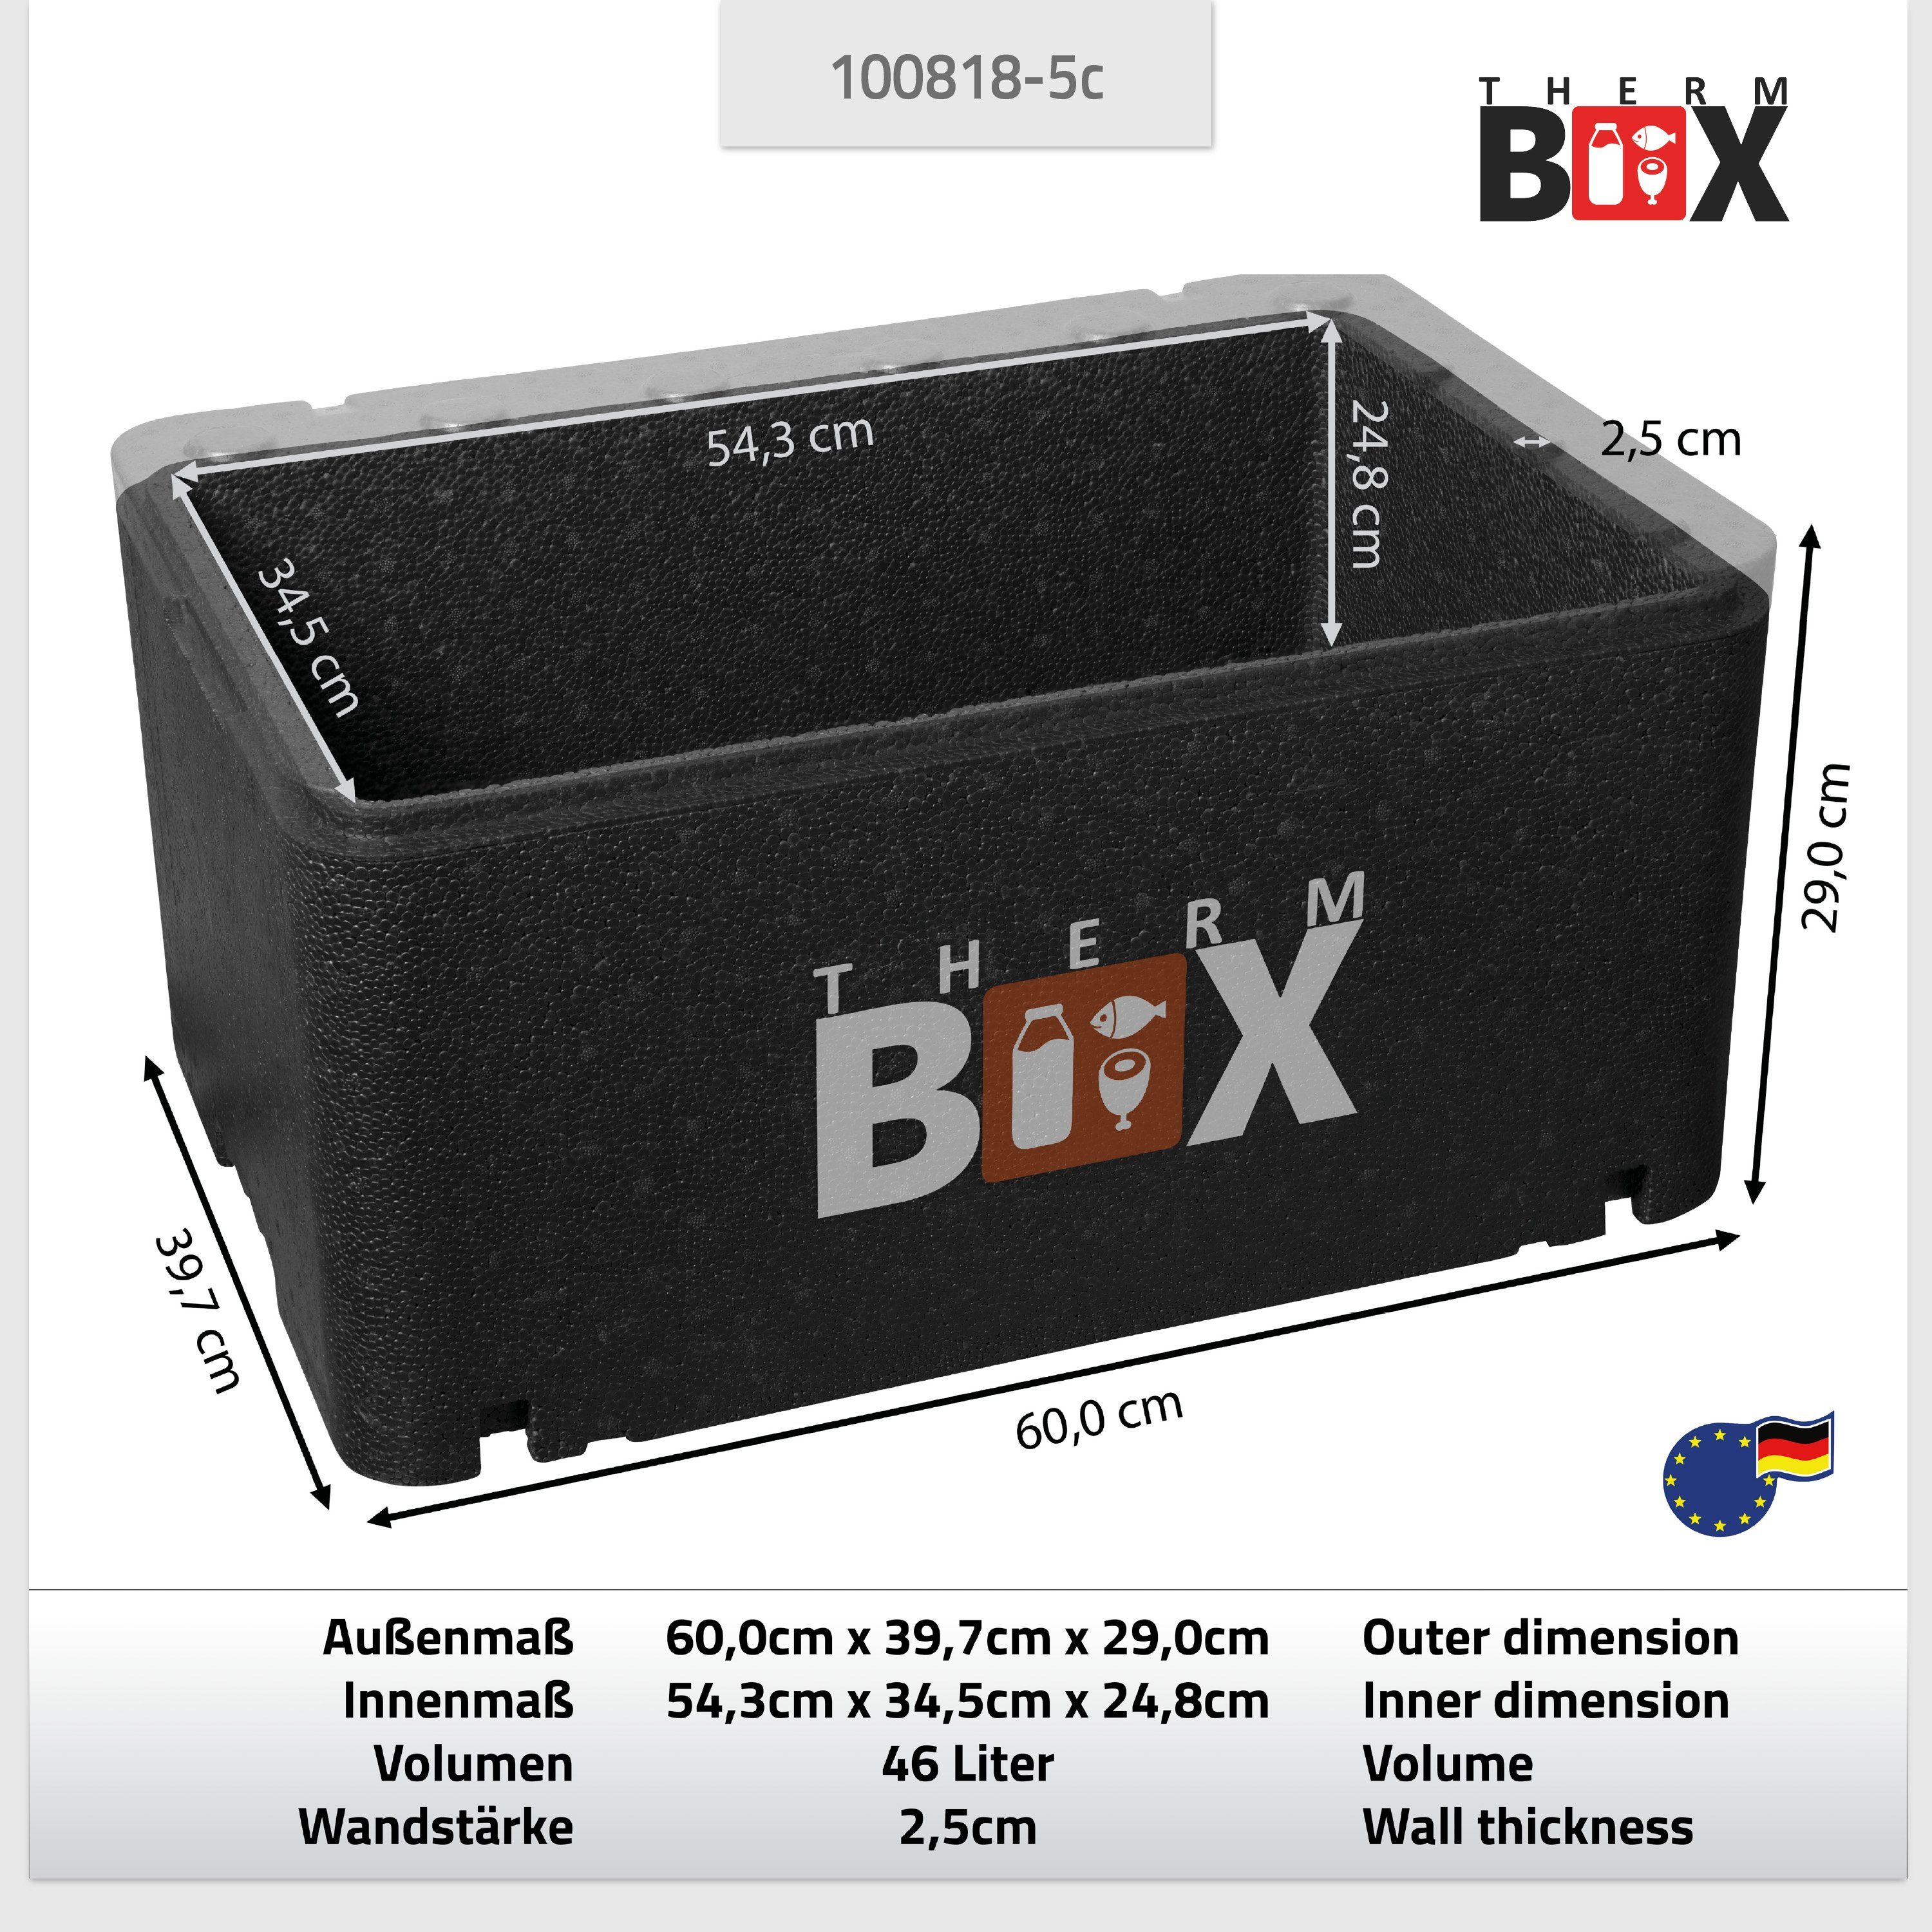 THERM-BOX Thermobehälter Profibox GN1 mit mit Transportbox Kühlkissen), Kühlbox Kühlkissen, 46,45L 54x34x24cm Styropor-Piocelan, (0-tlg., für Thermbox Kühlakku Innen: 5